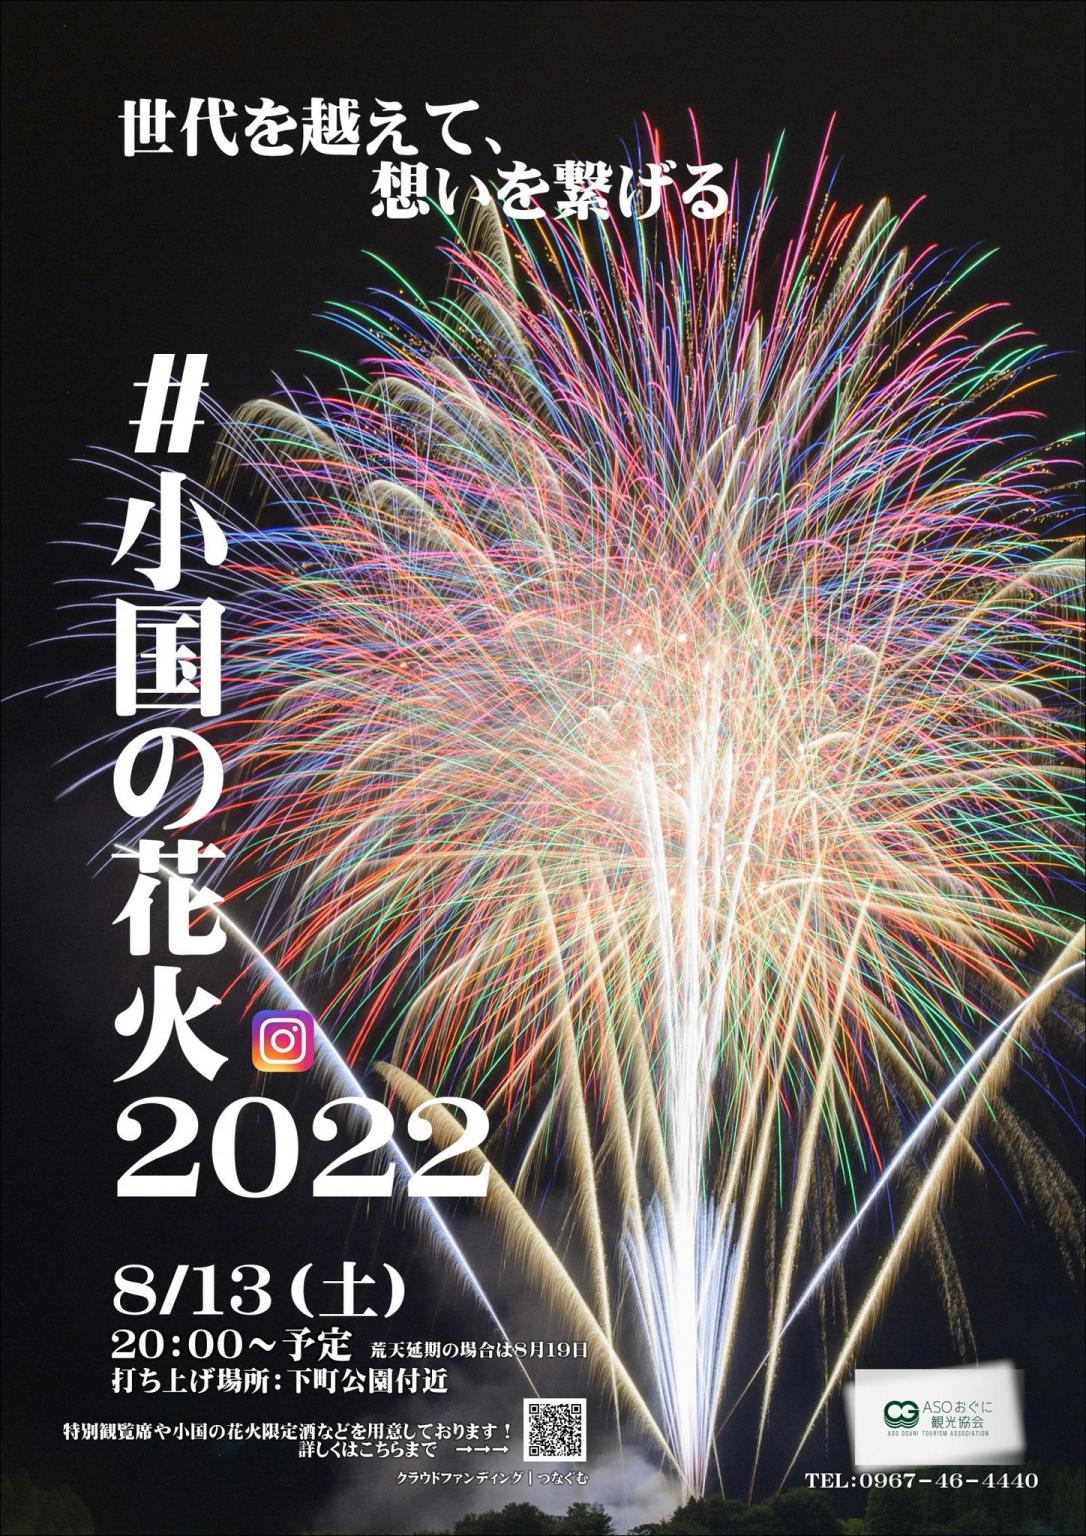 世代を越えて 想いを繋げる 小国の花火22 イベント 公式 熊本県観光サイト もっと もーっと くまもっと